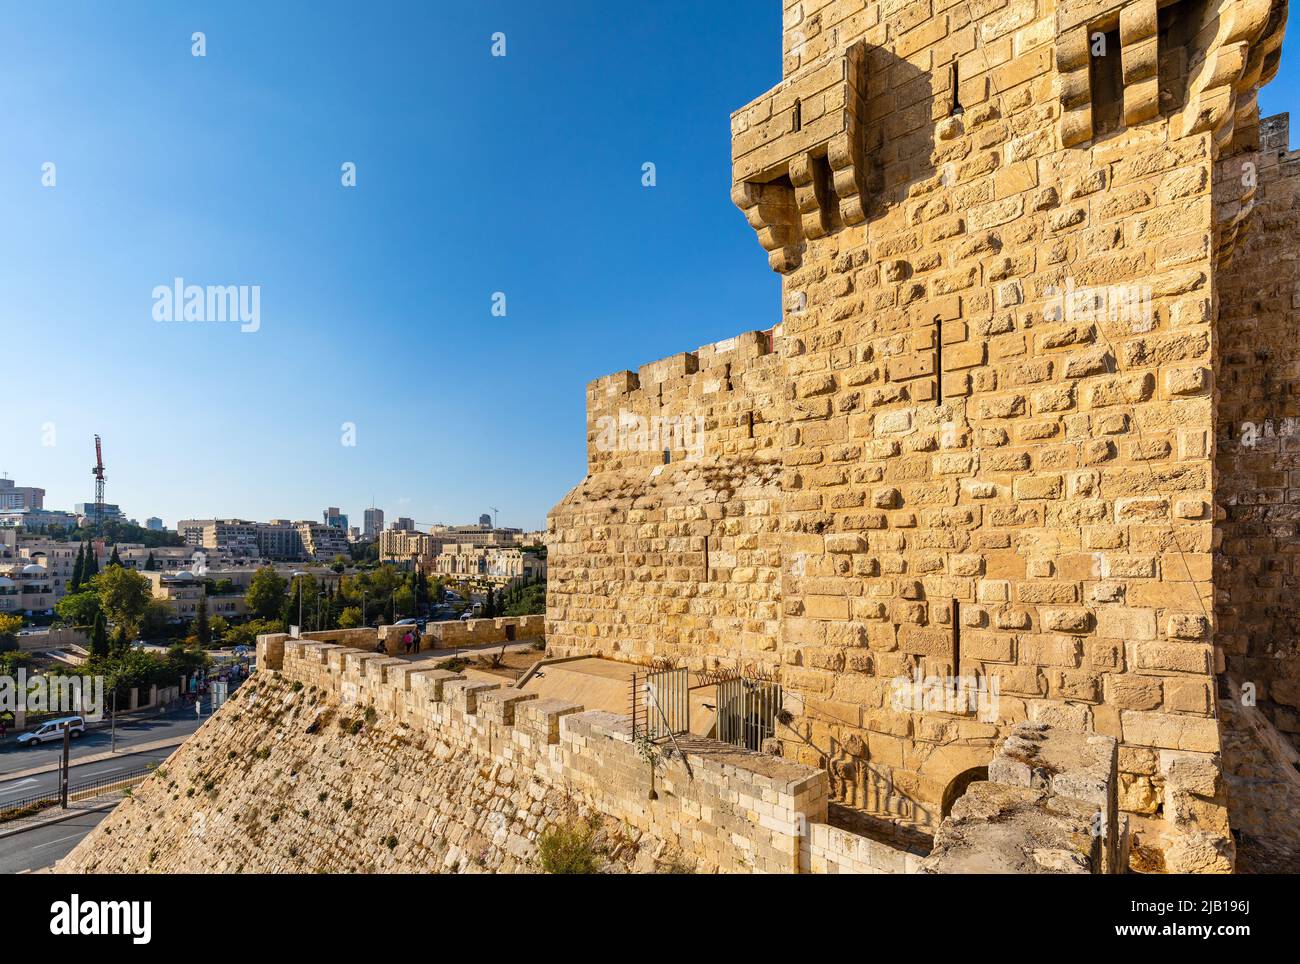 Jerusalem, Israel - 12. Oktober 2017: Mauern des Turms der Zitadelle von David und der Altstadt über dem Jaffa-Tor mit dem Mamilla-Viertel von Jerusalem Stockfoto